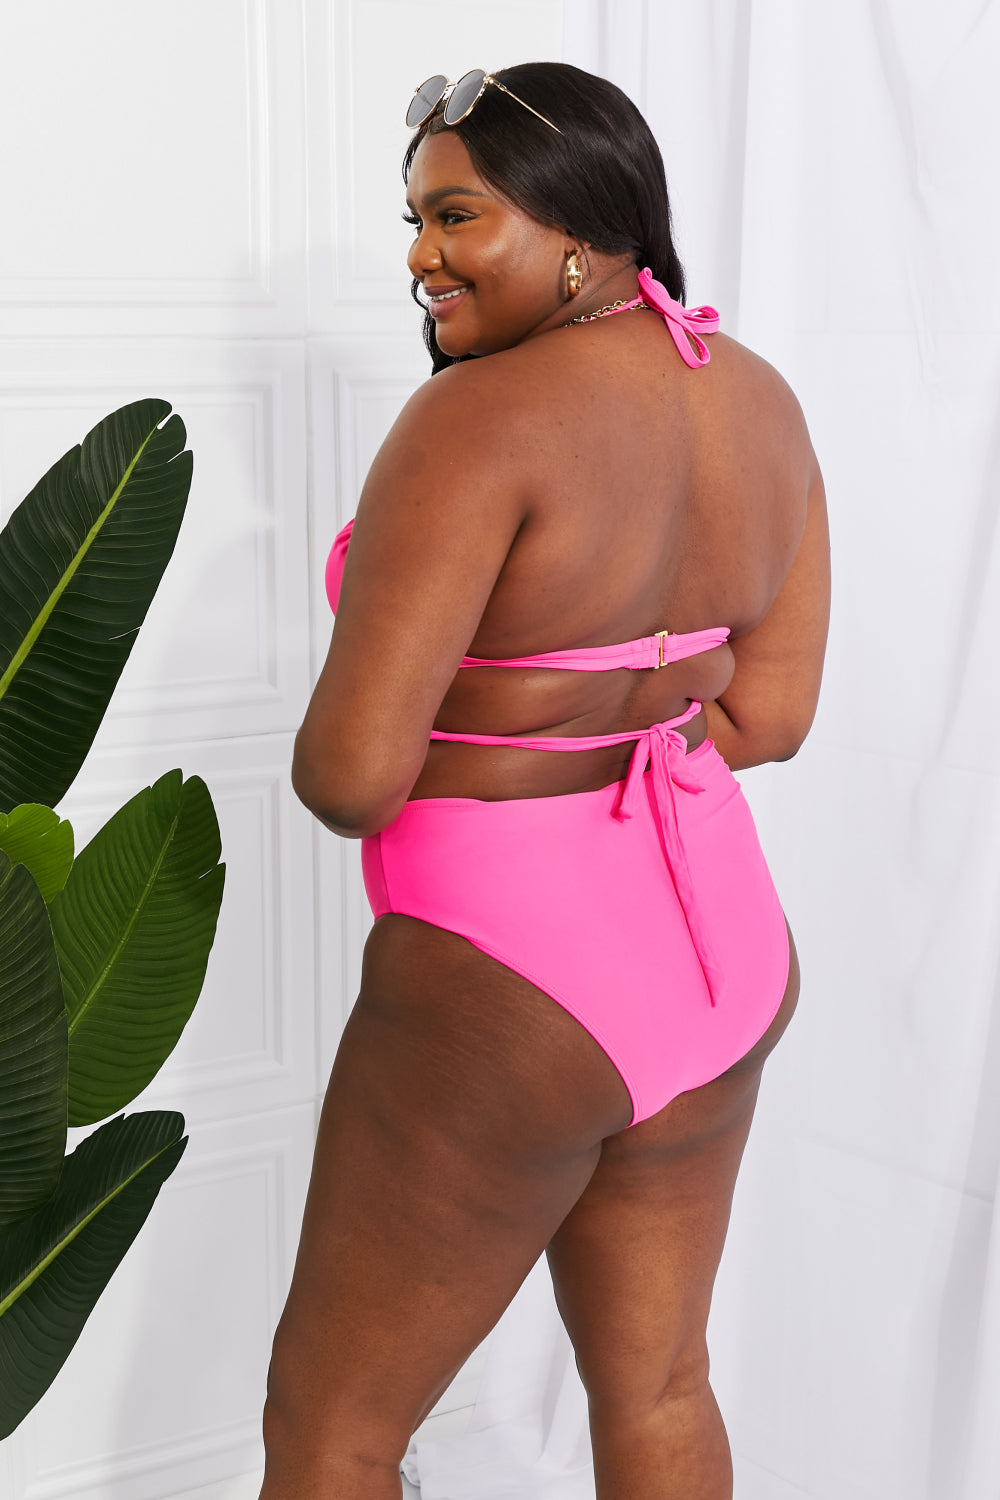 Marina West Swim Summer Splash Halter Bikini Set in Pink - Online Only